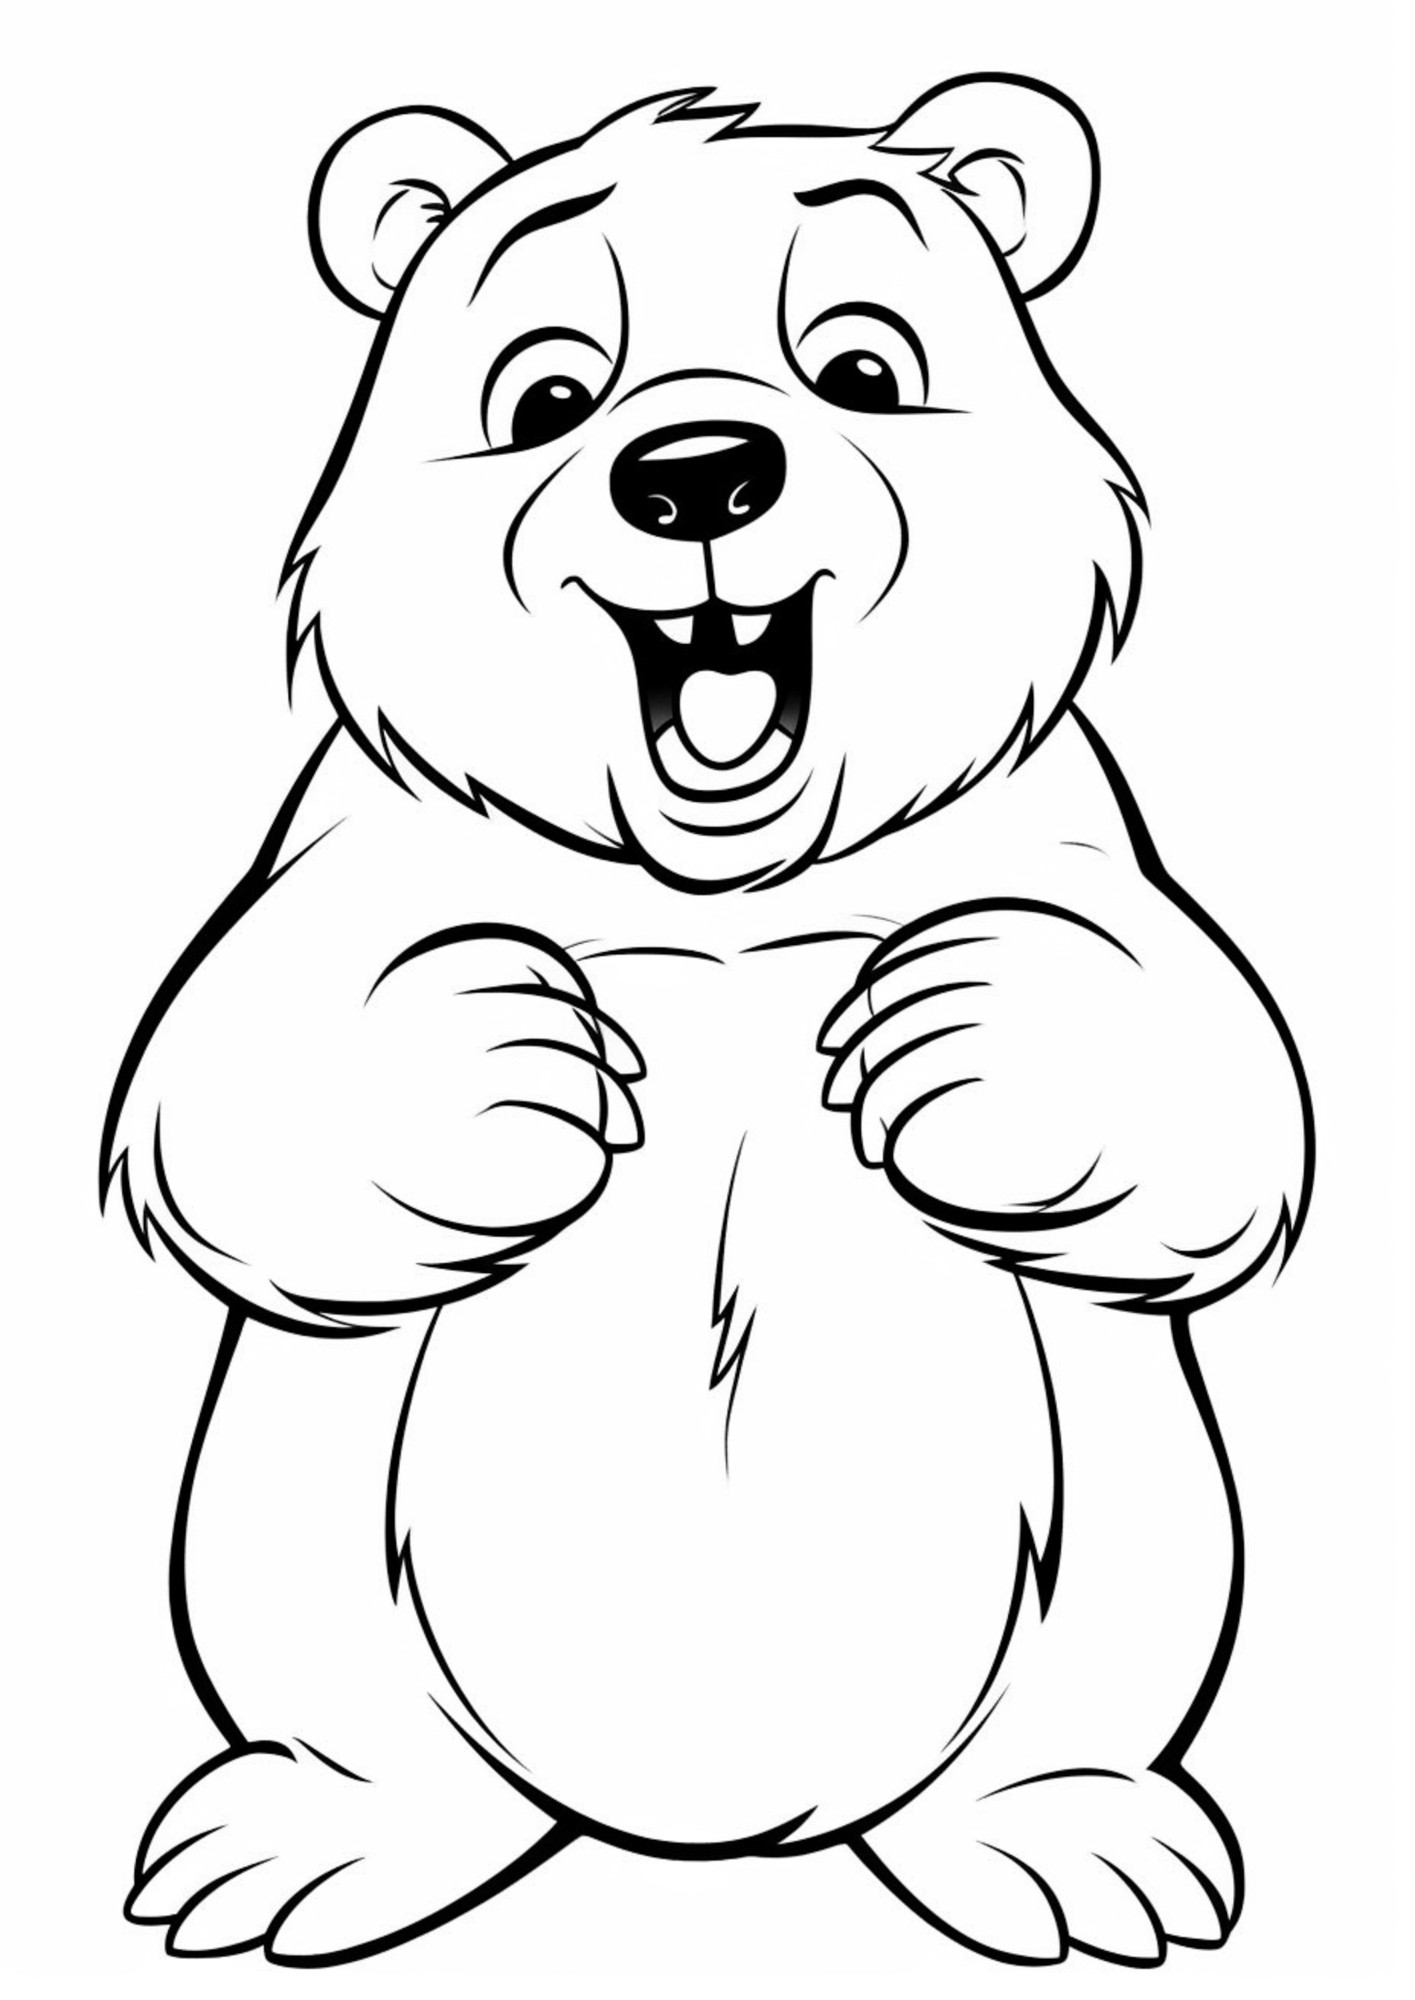 Раскраска для детей: веселый медведь